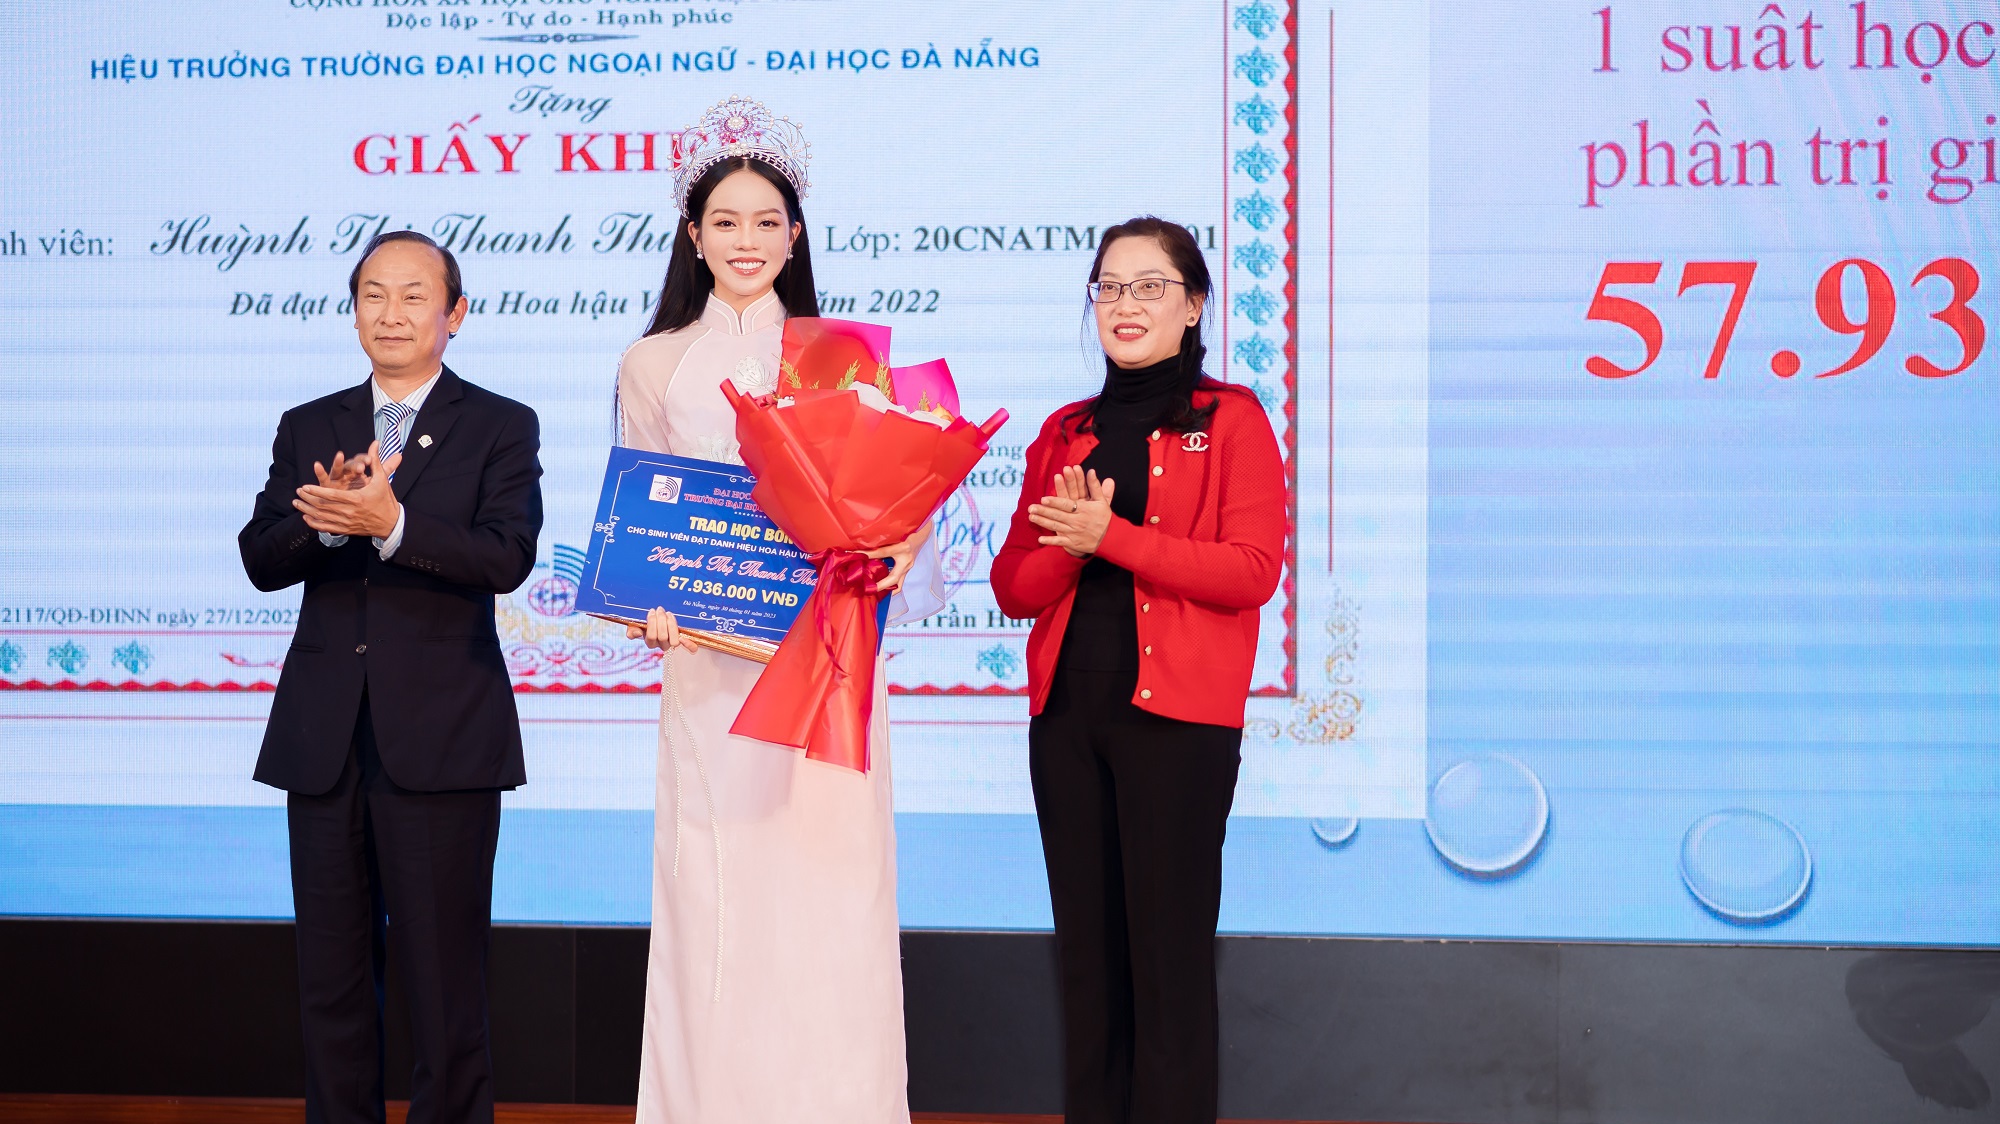 Hoa hậu Thanh Thủy nhận bằng khen và học bổng